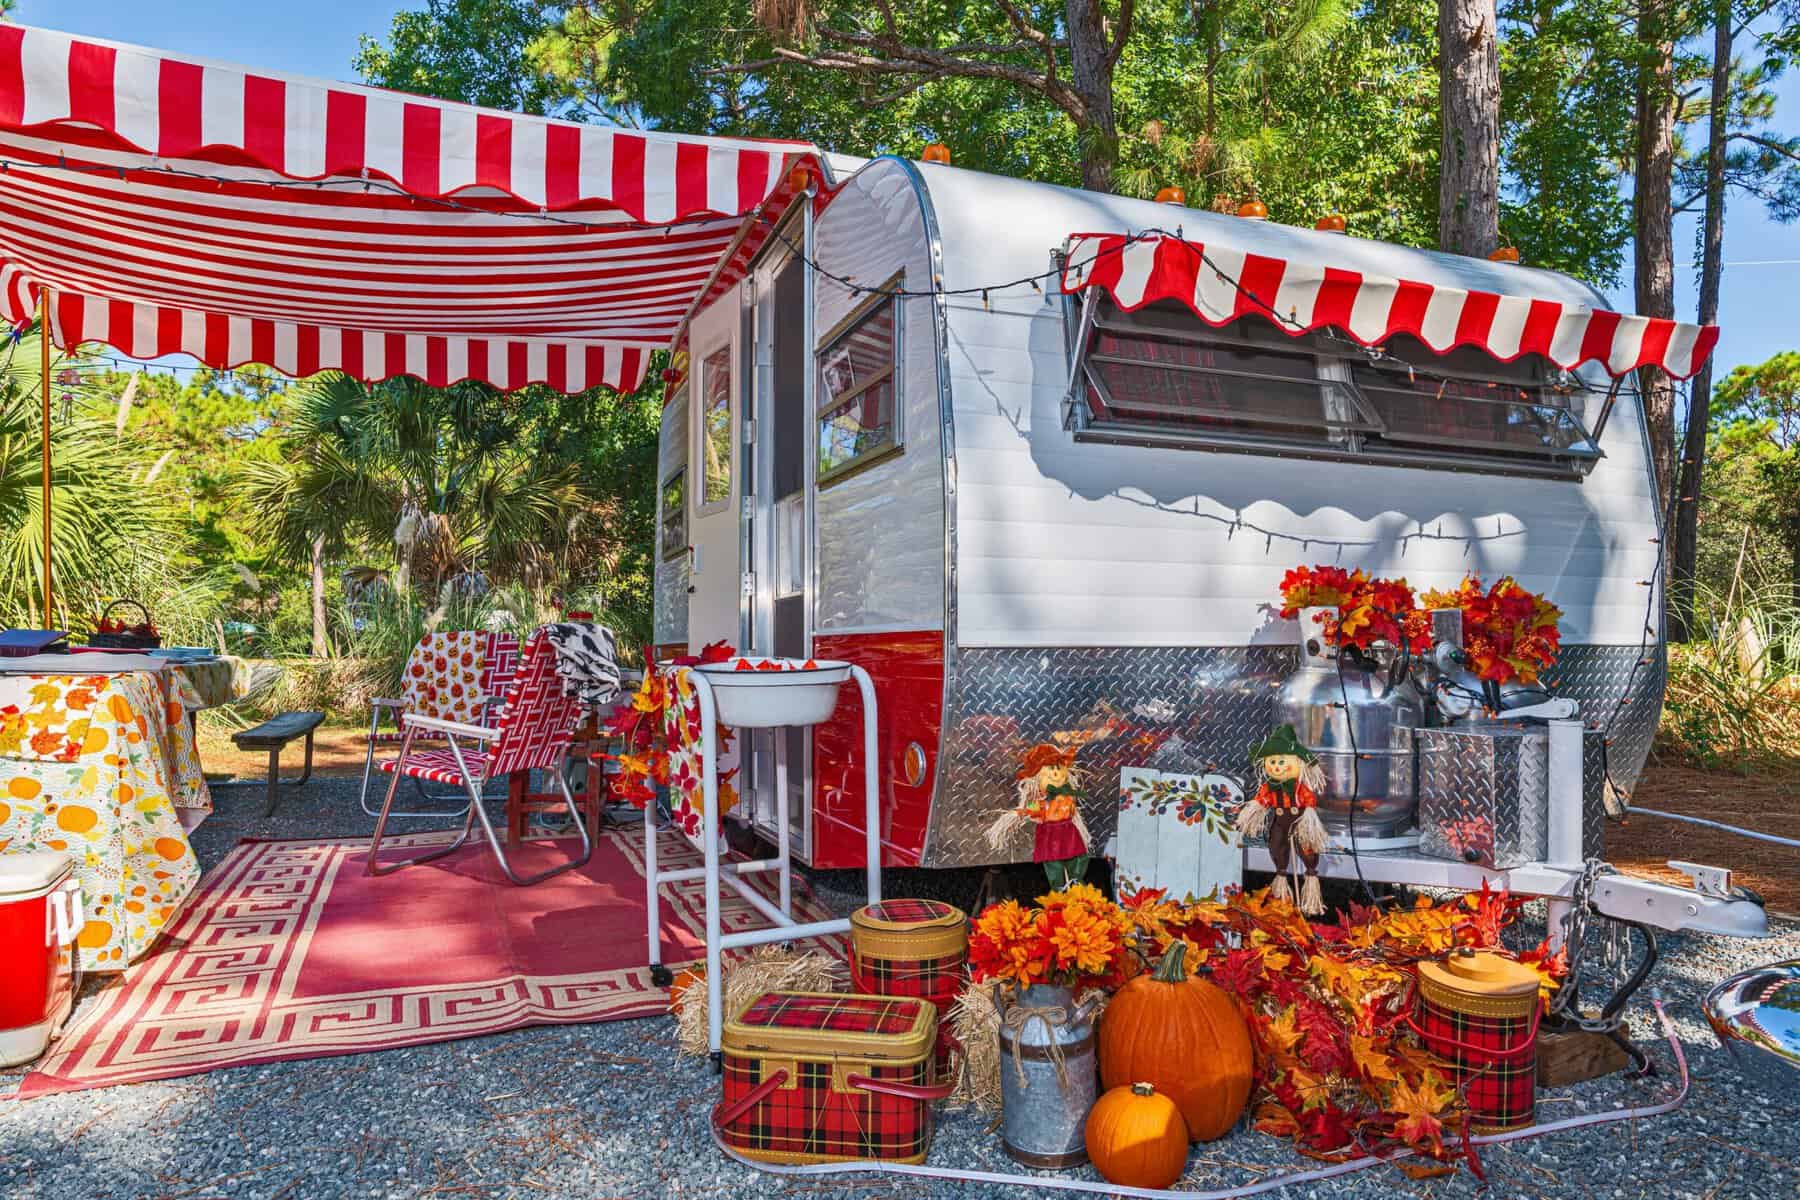 RV owner chose to decorate a campsite in full fall regalia